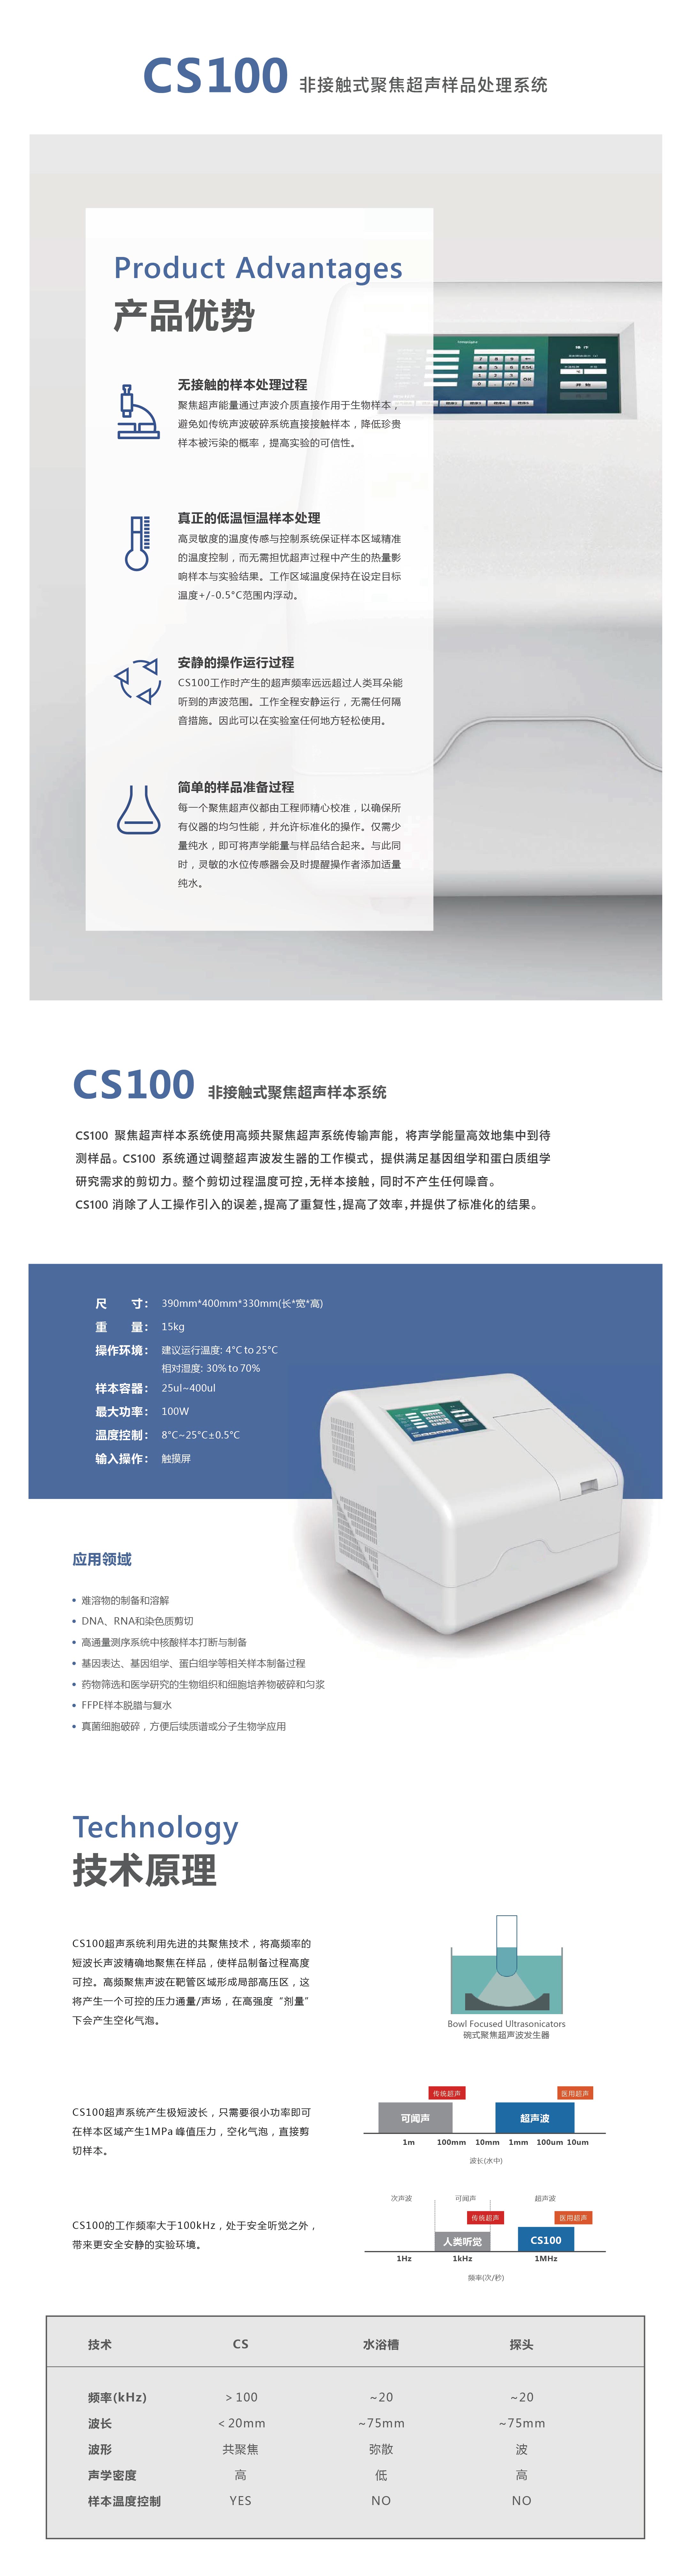 CS100聚焦超声样品处理系统-01.jpg